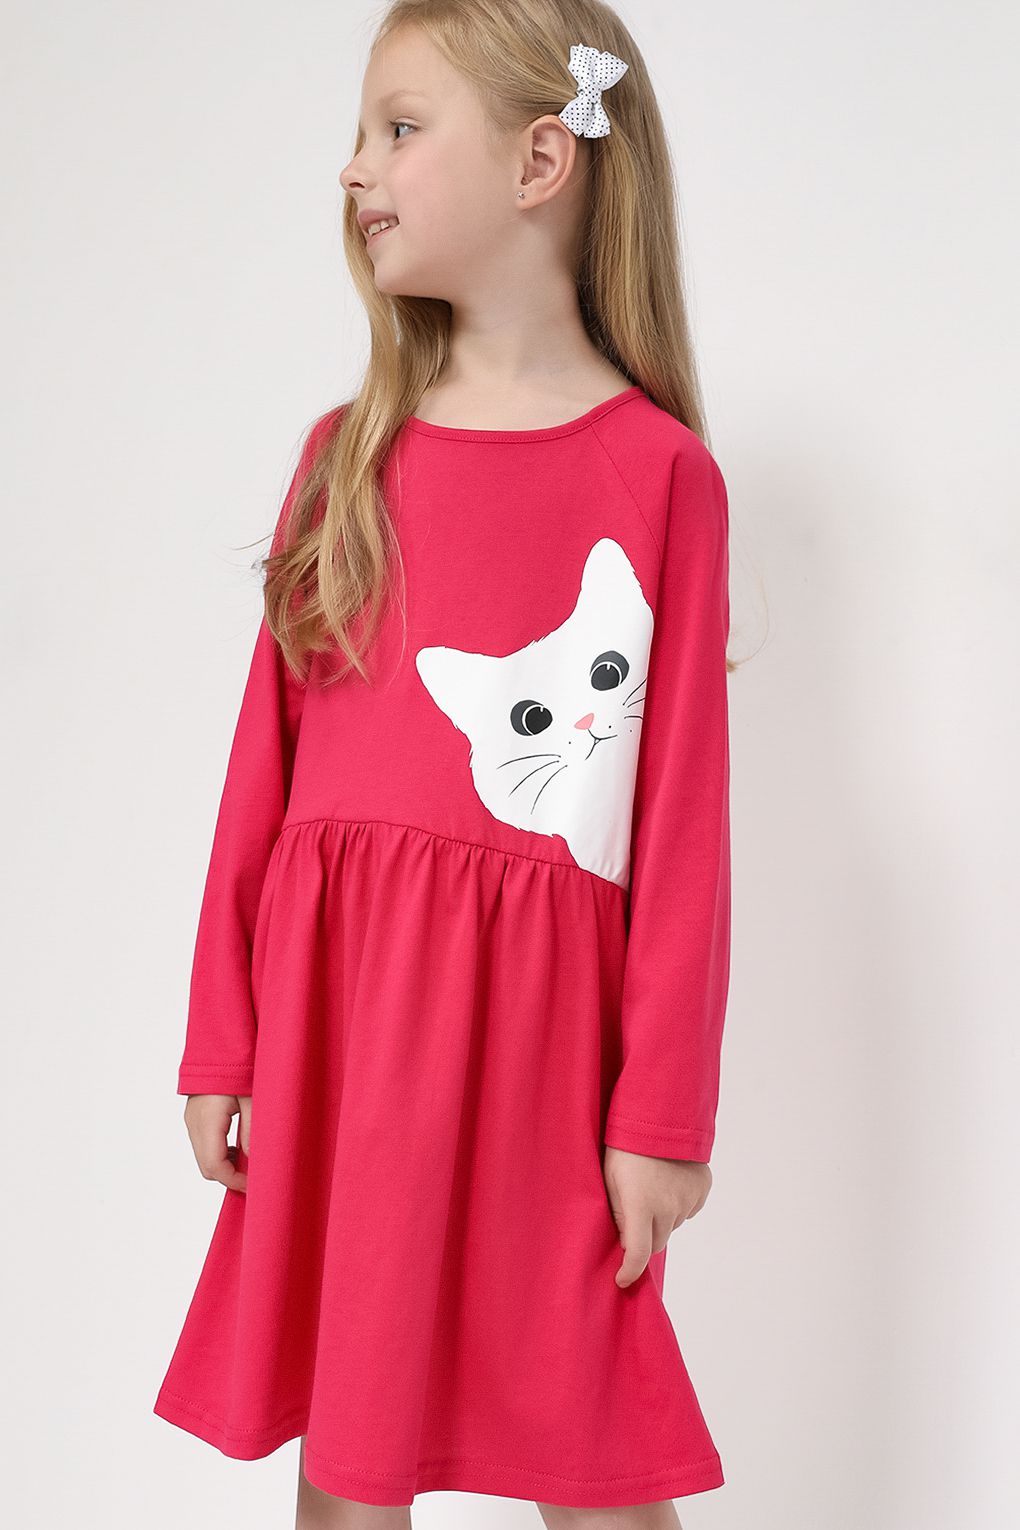 Платье детское GIOCO G23105390CD, ярко-розовый, 98